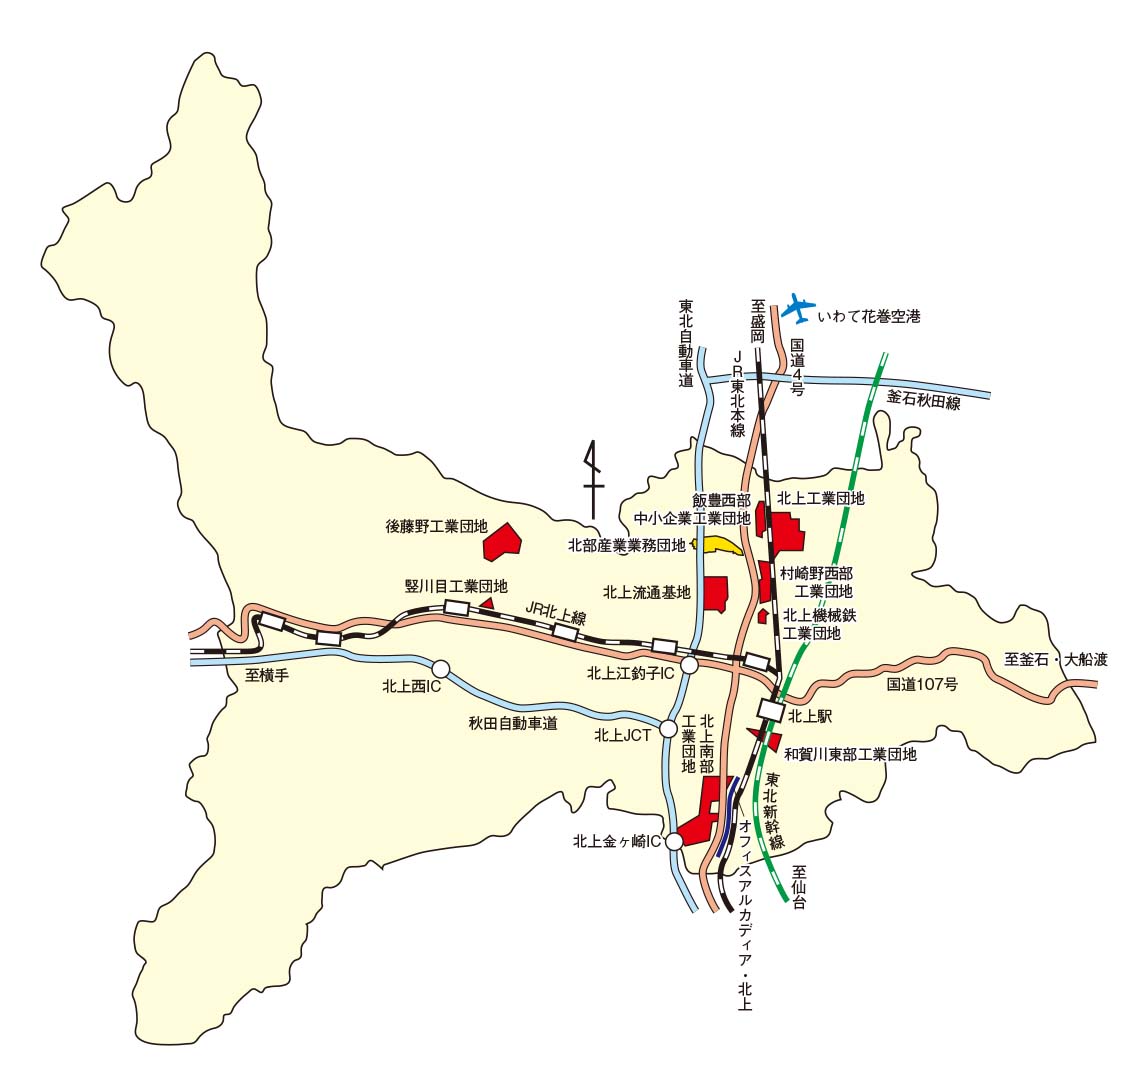 北上市内工業団地位置図